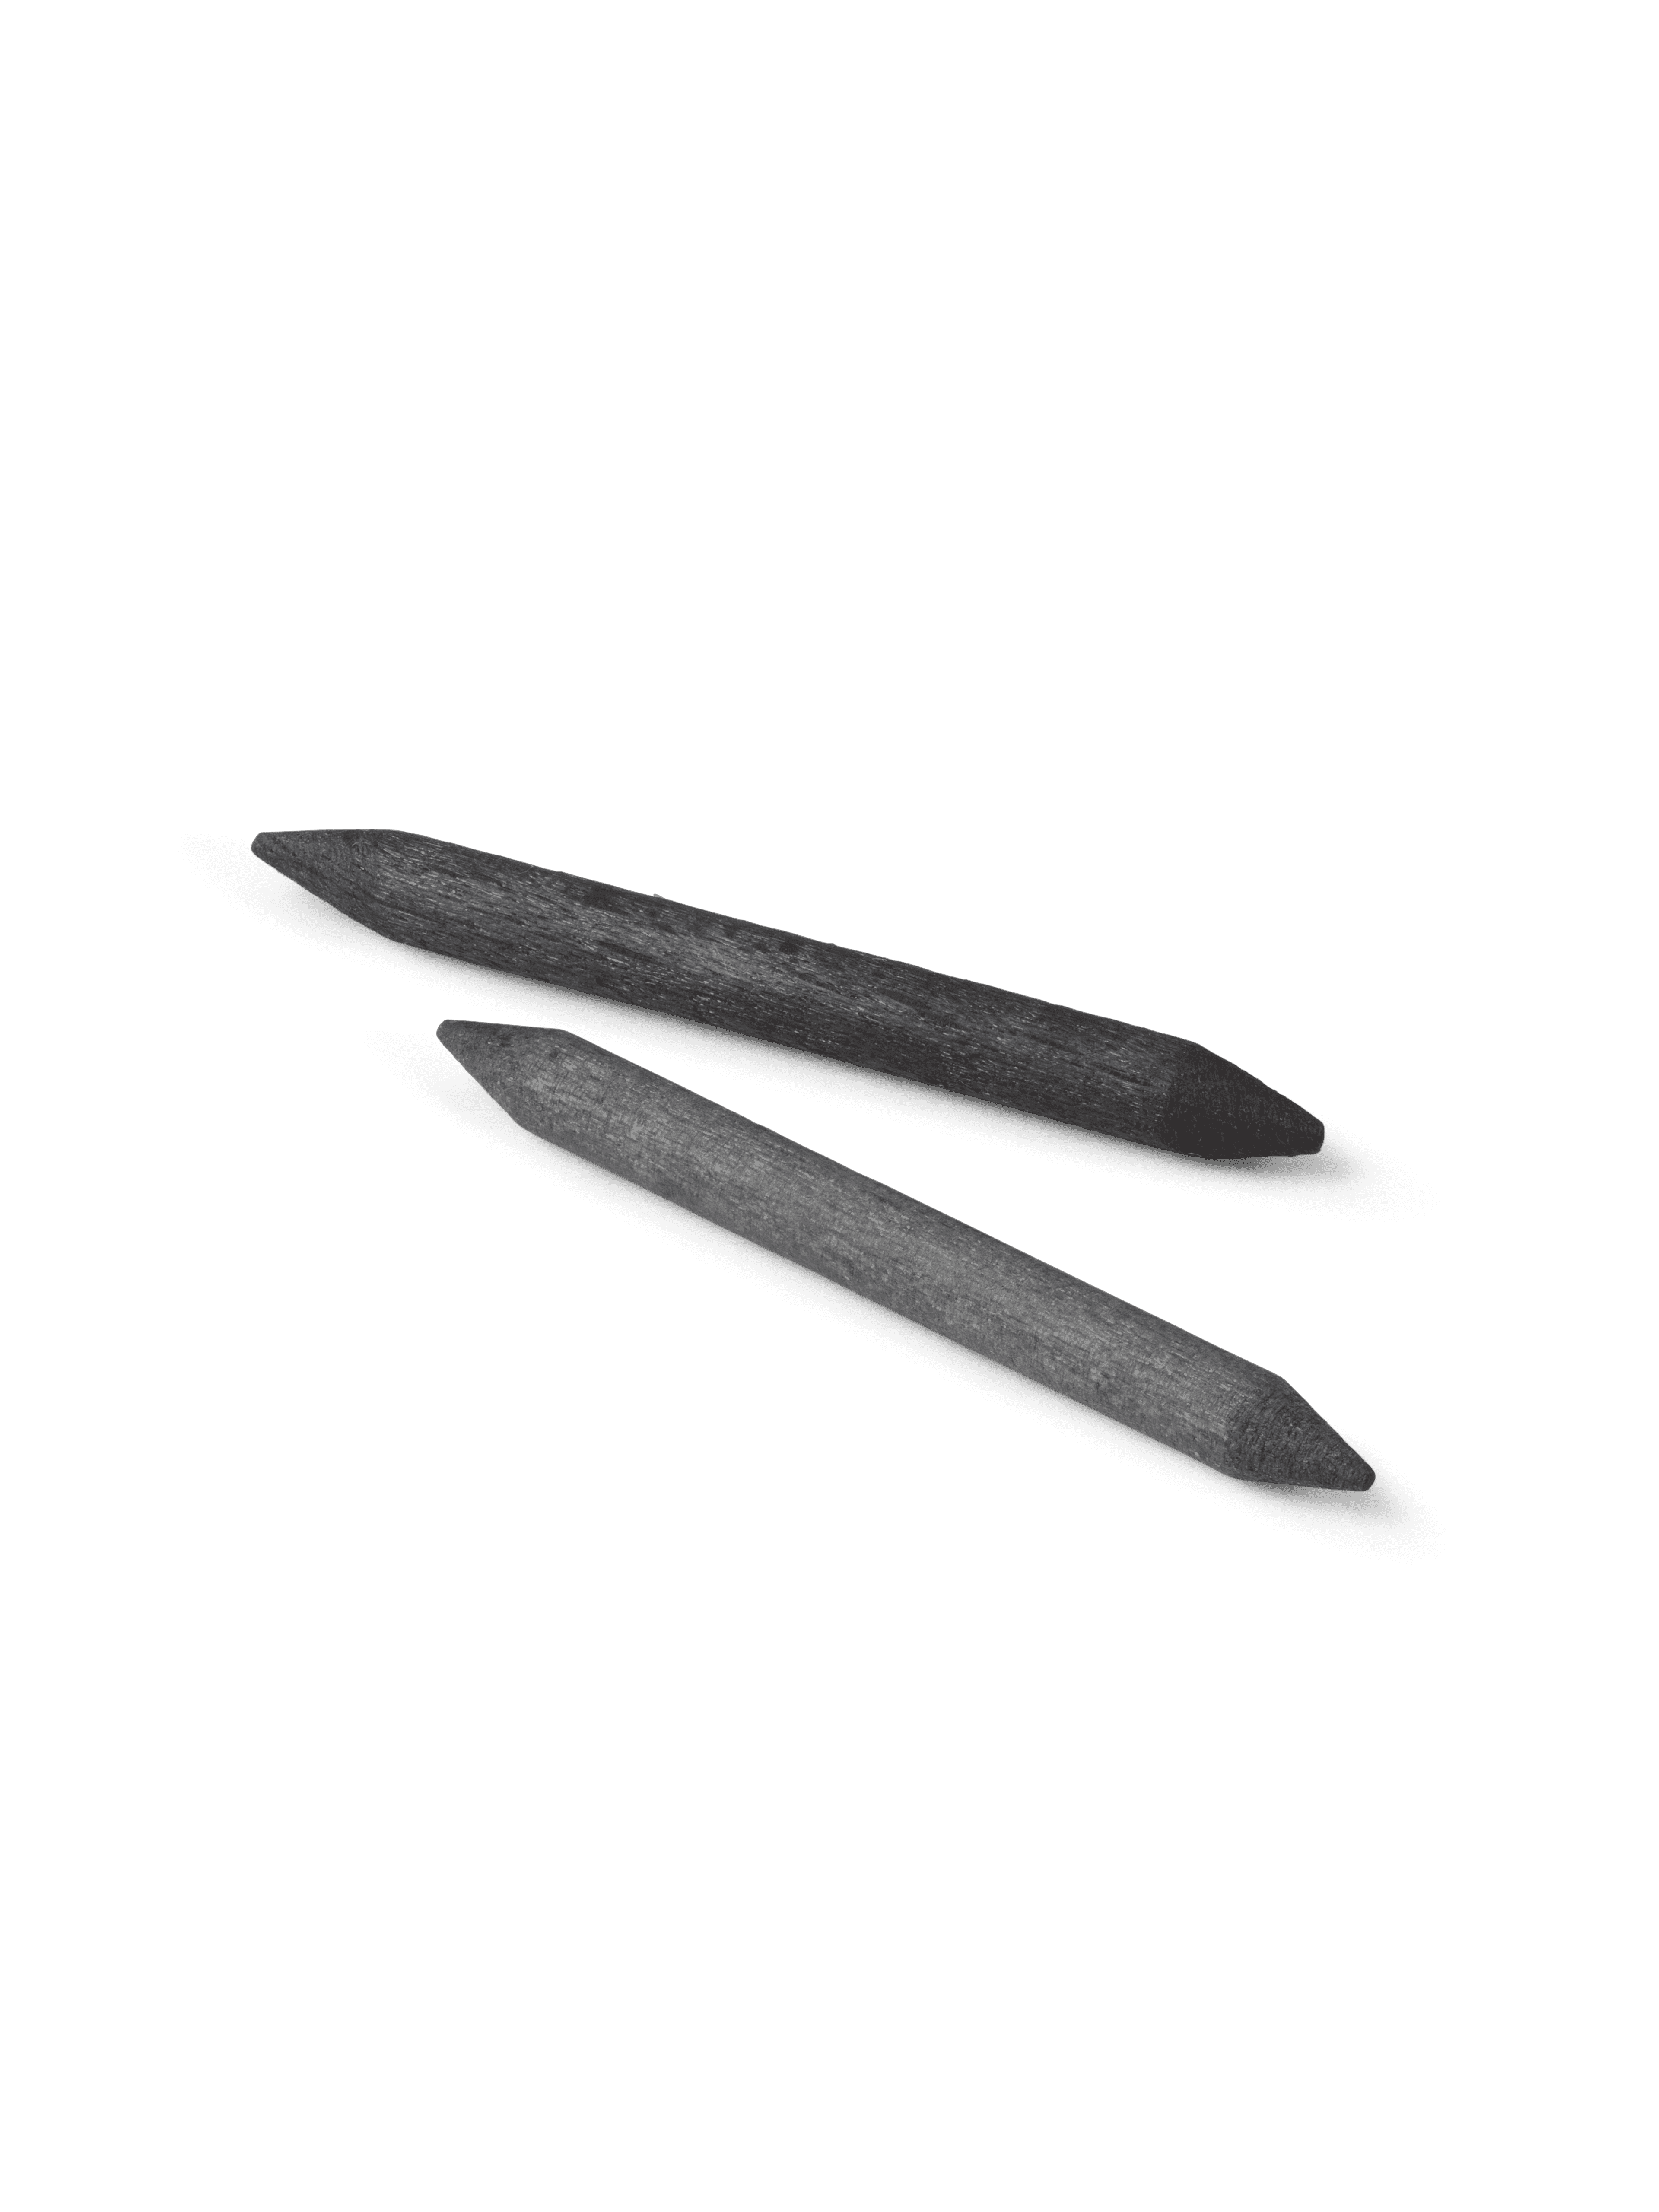 Standard-bearer drumsticks, 2 pc. (39024, 39013)